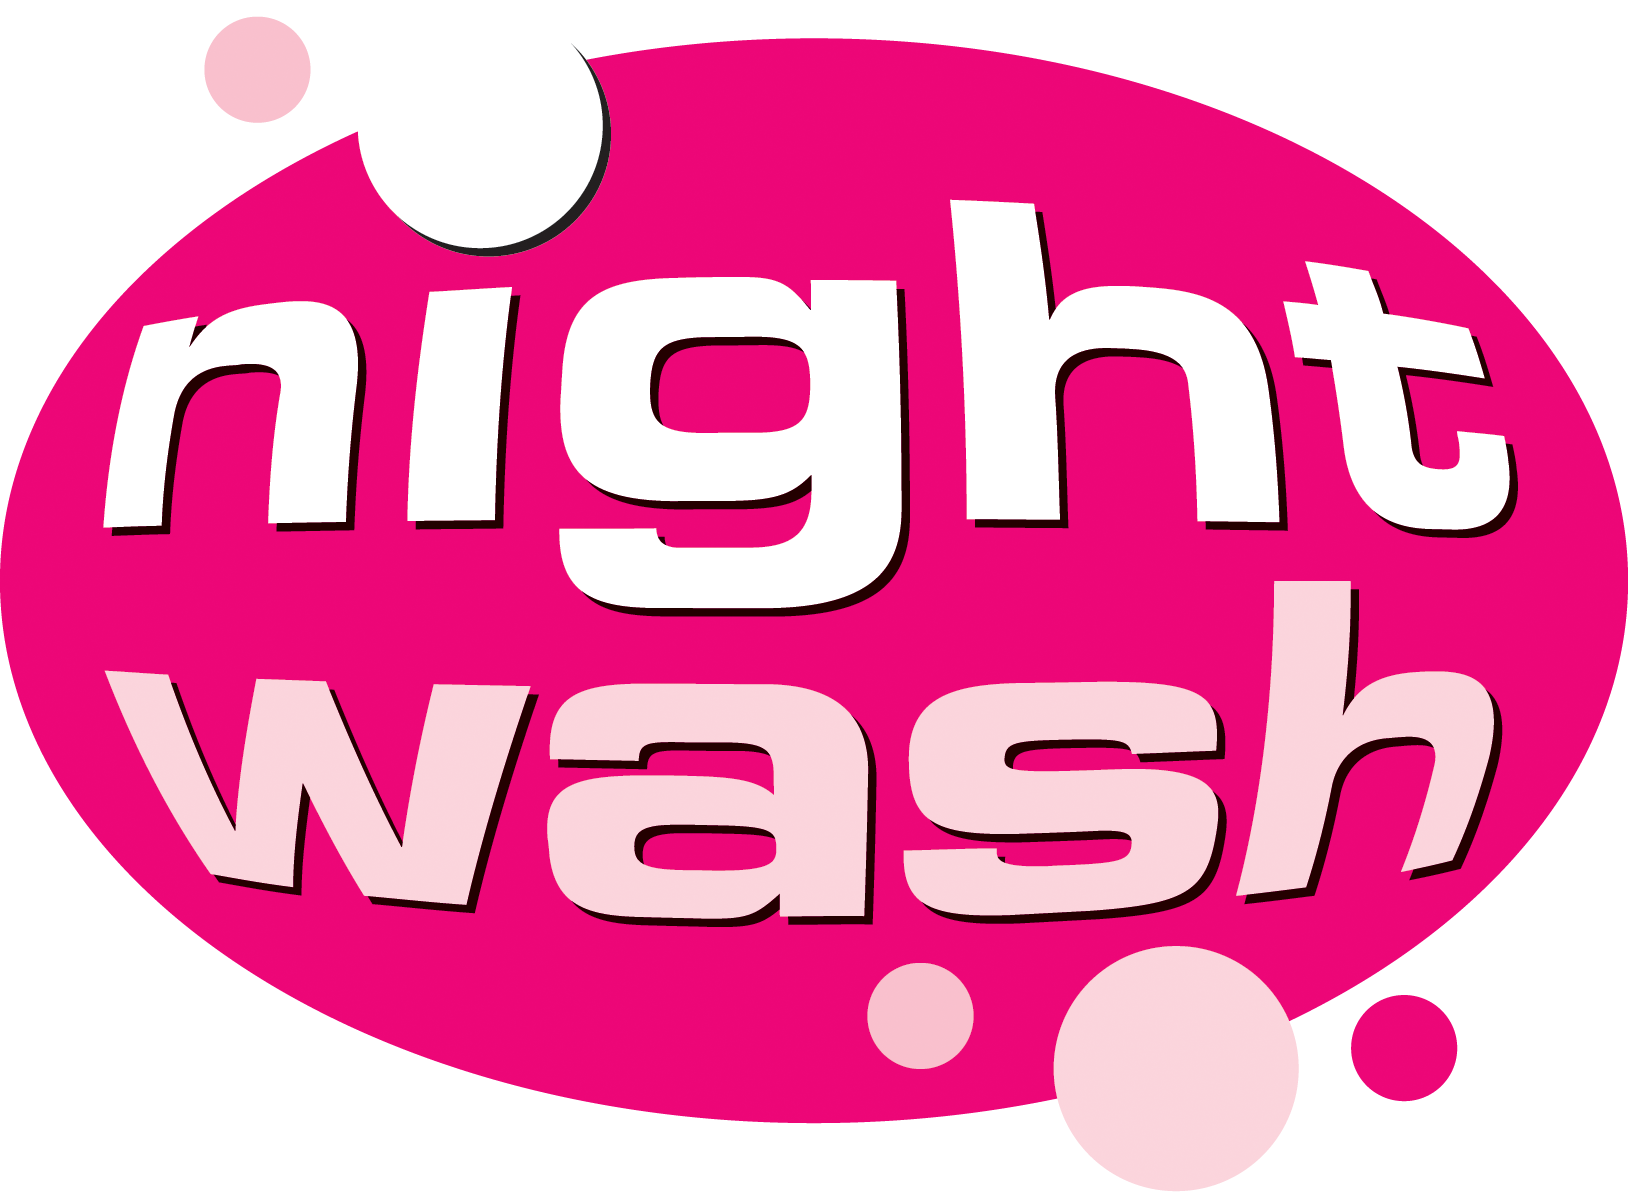 NightWash Club